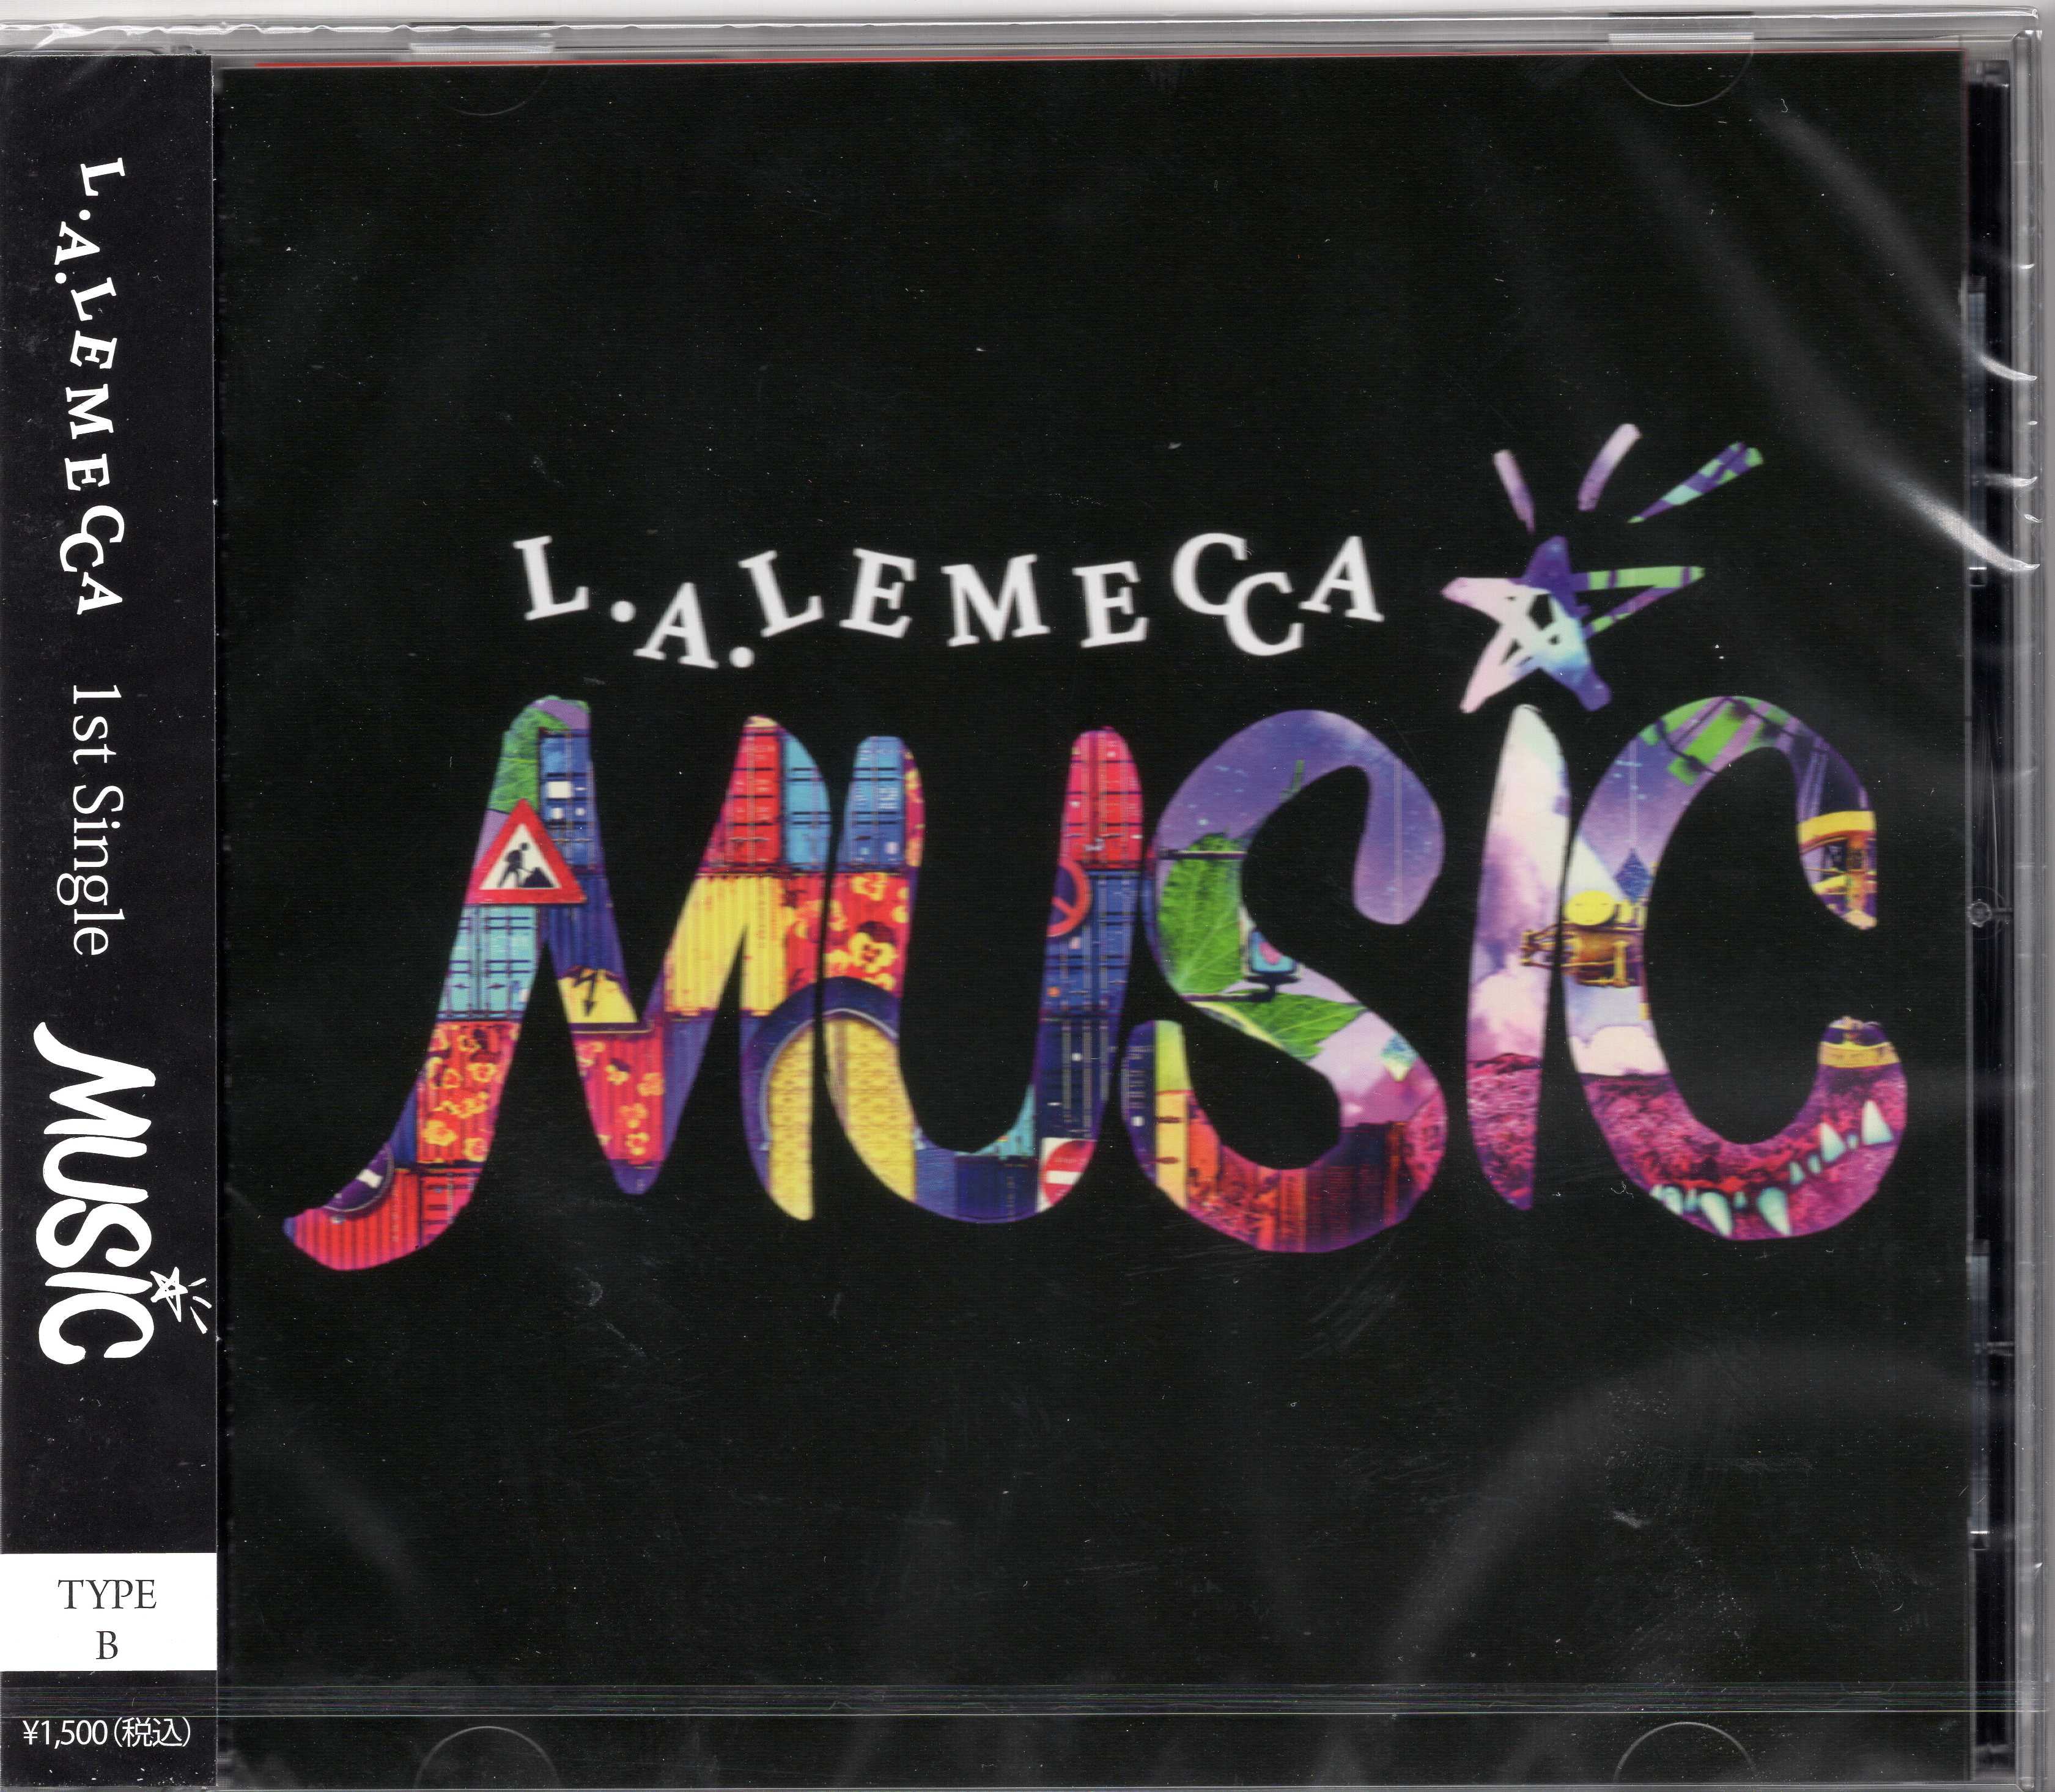 L.A.LEMECCA ( エルエーレメッカ )  の CD 【B タイプ】MUSIC